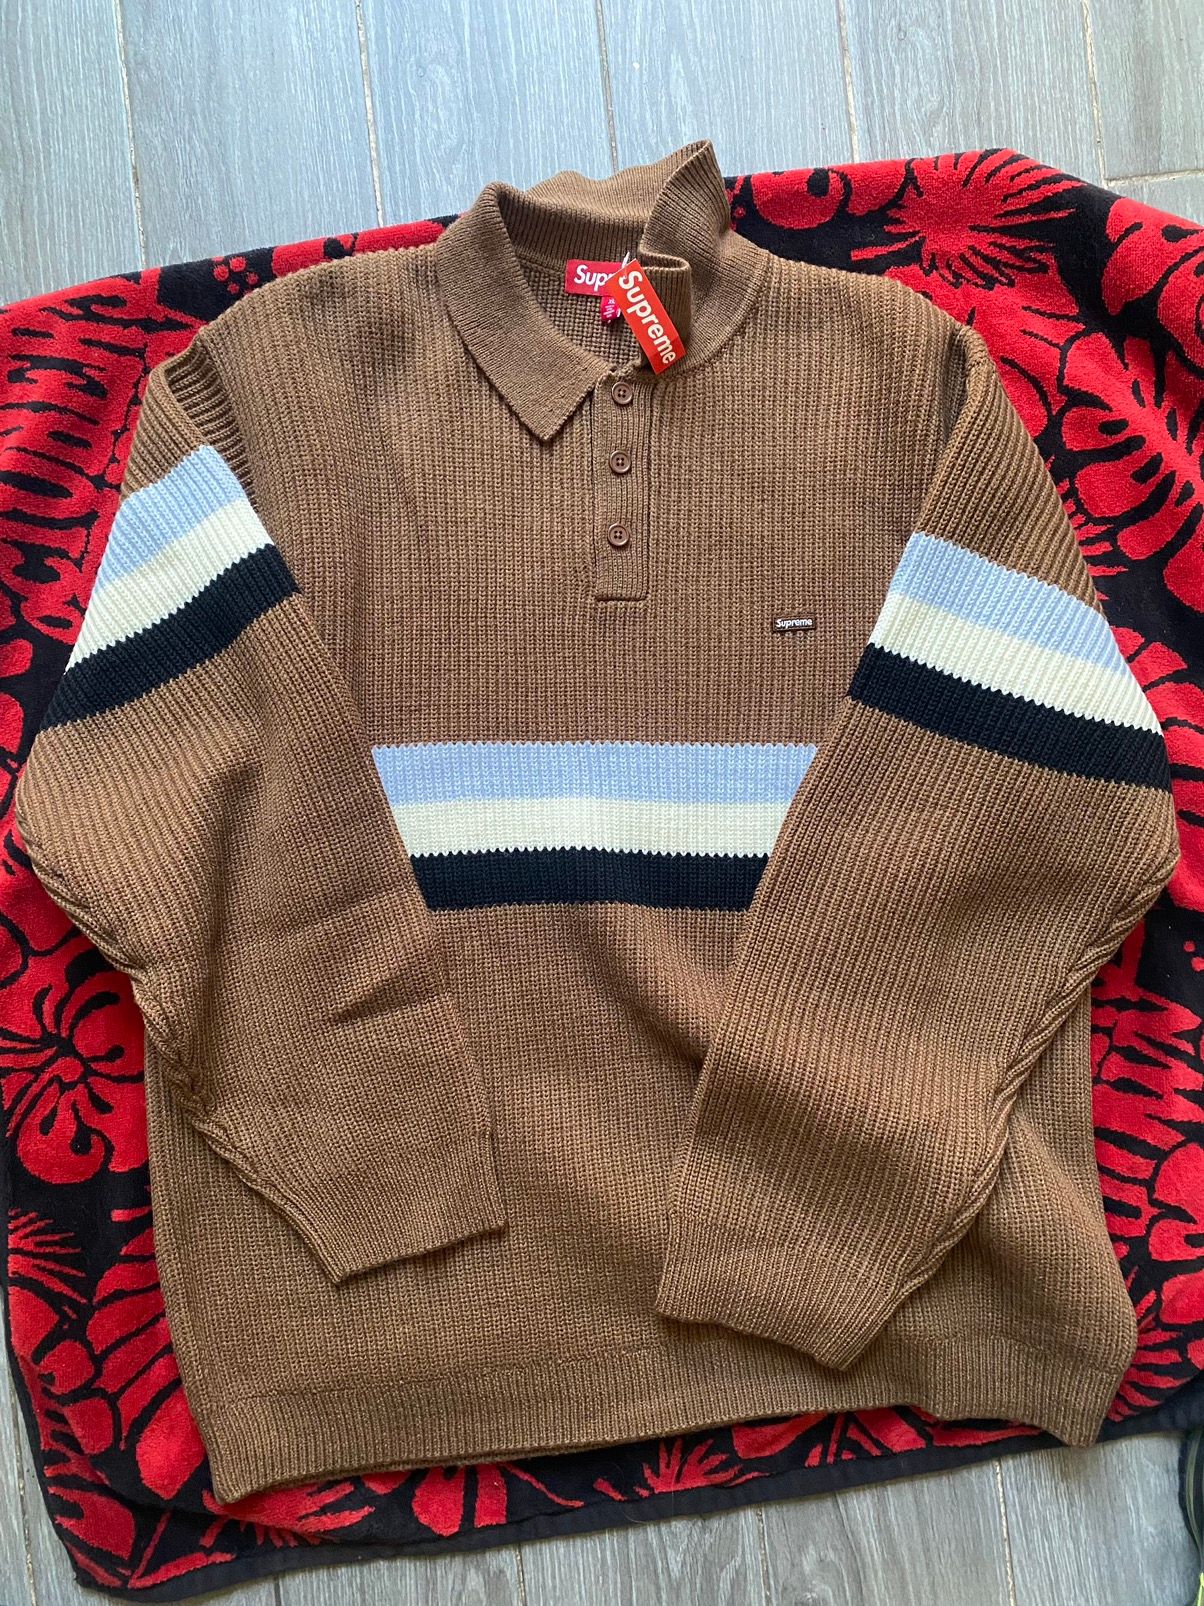 Supreme Supreme Small Box Polo Sweater size XL | Grailed